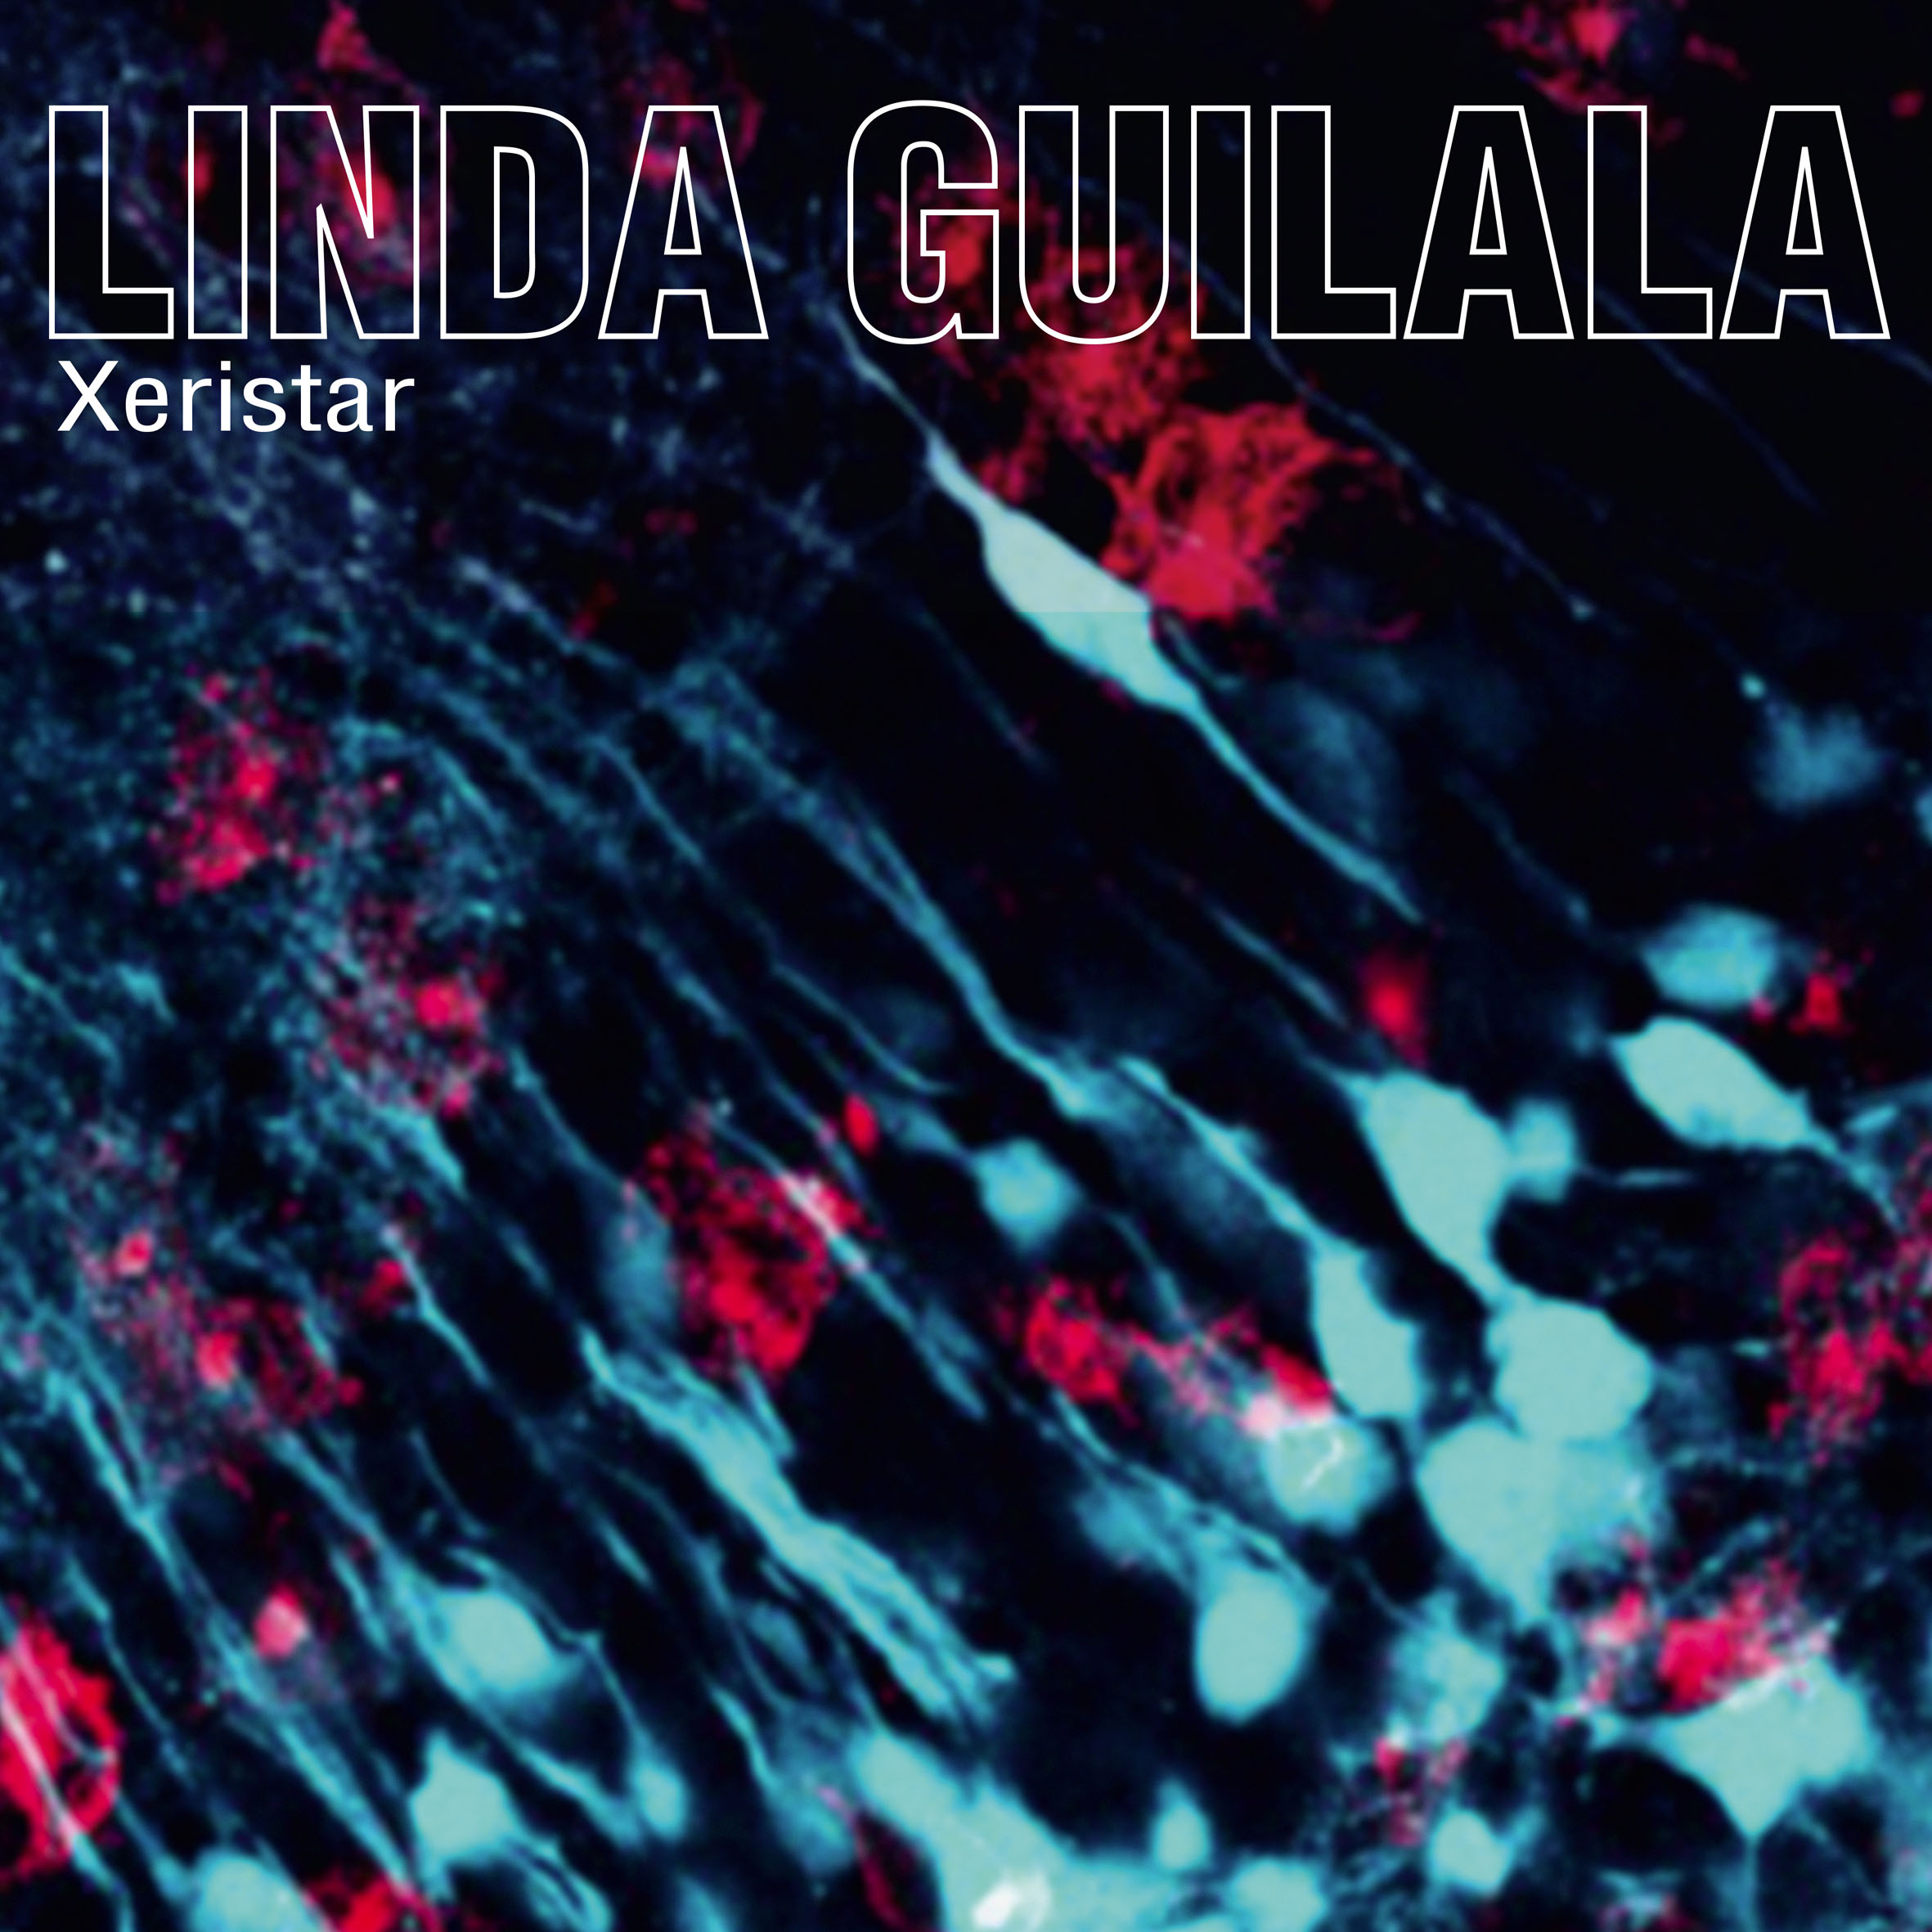 Linda Guilala